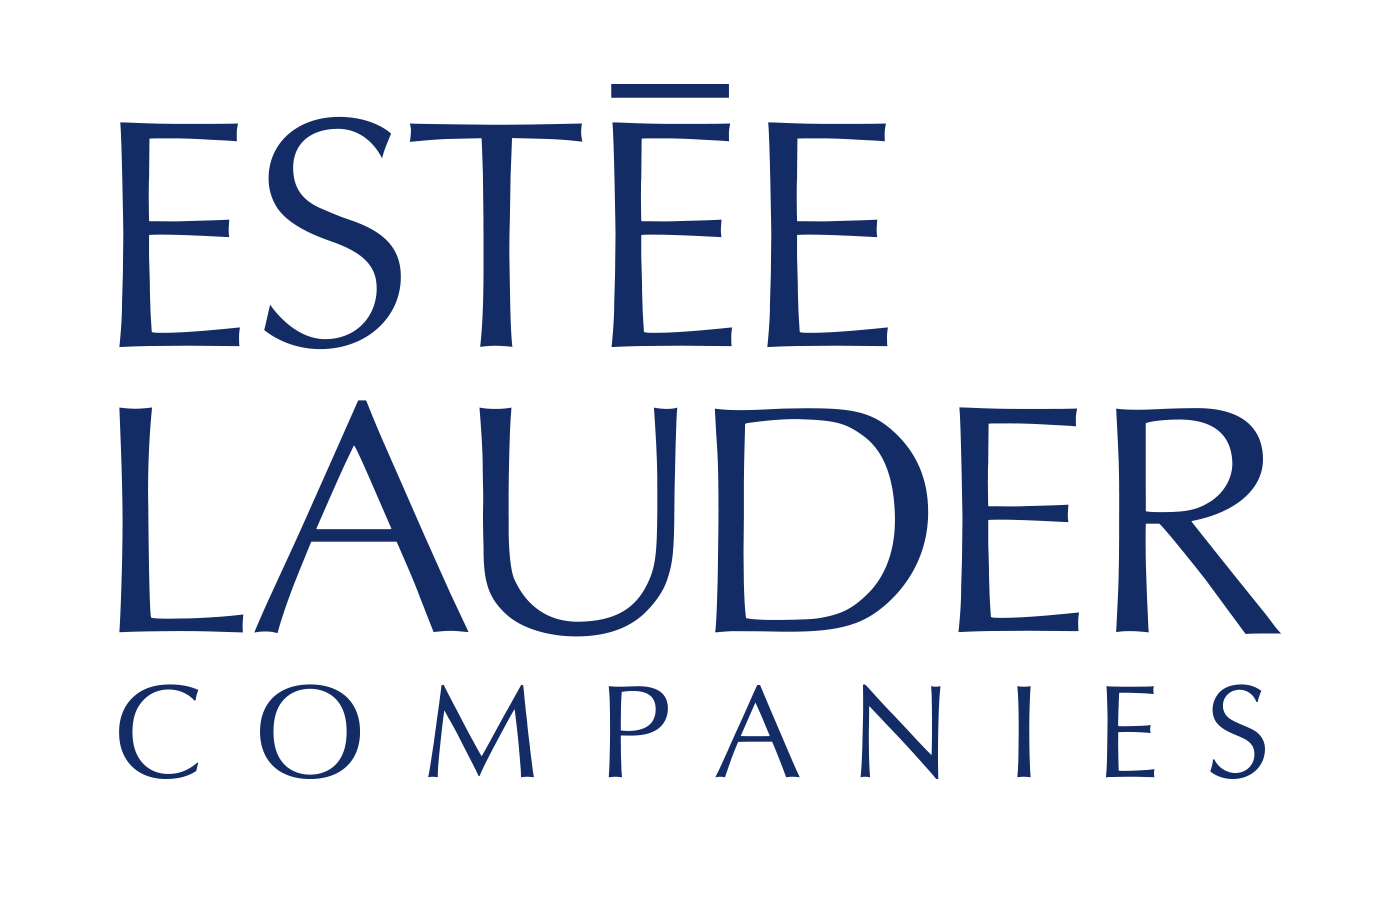 Estée Lauder Brand Logo